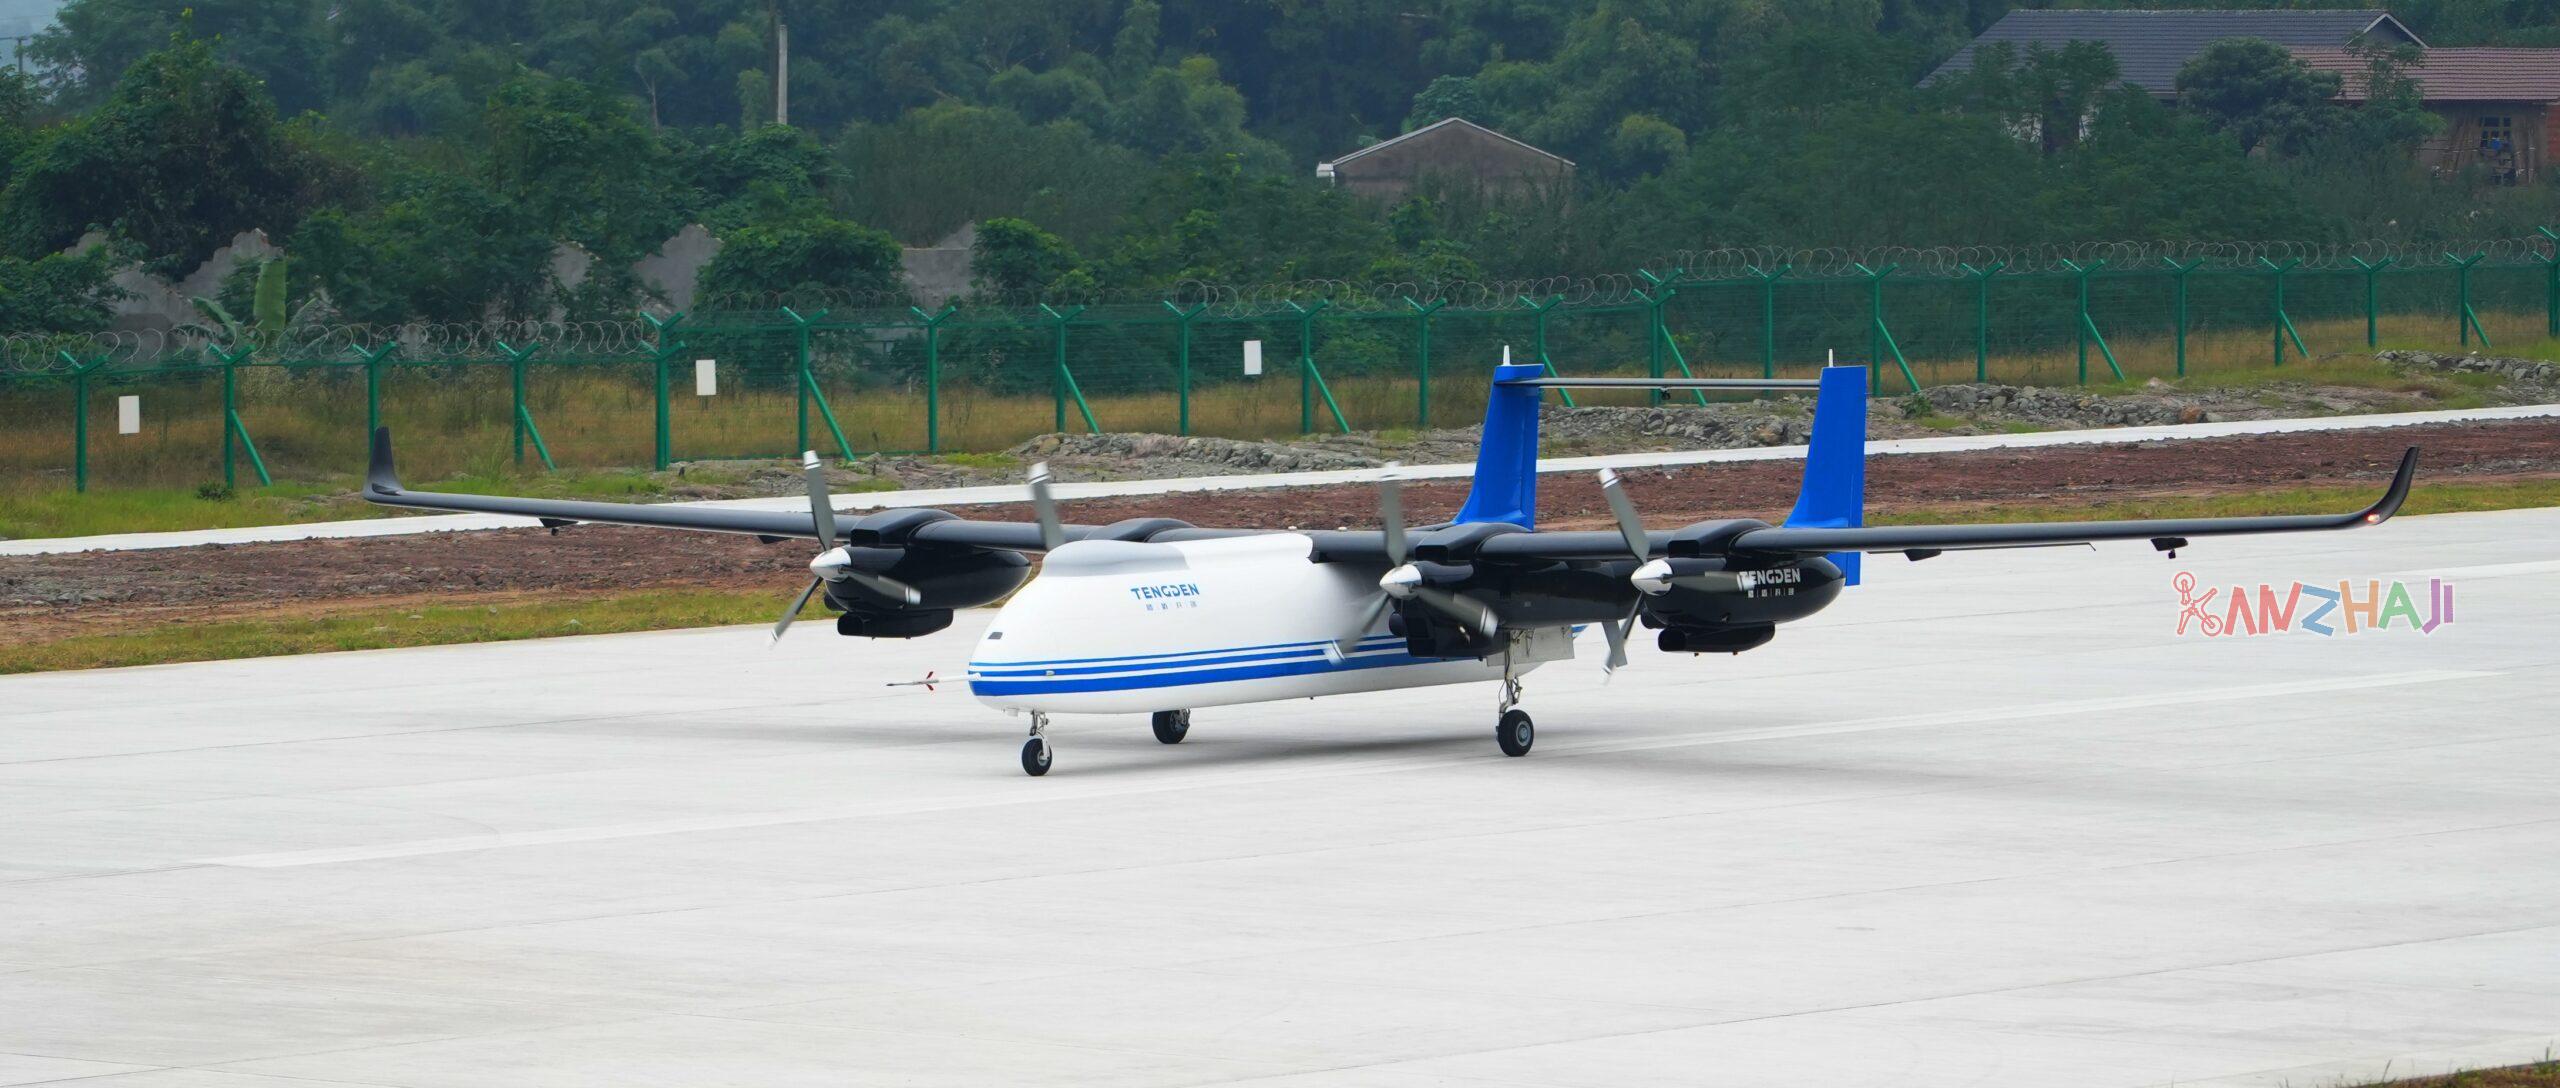 国产大型四发无人机首飞 将参加珠海航展